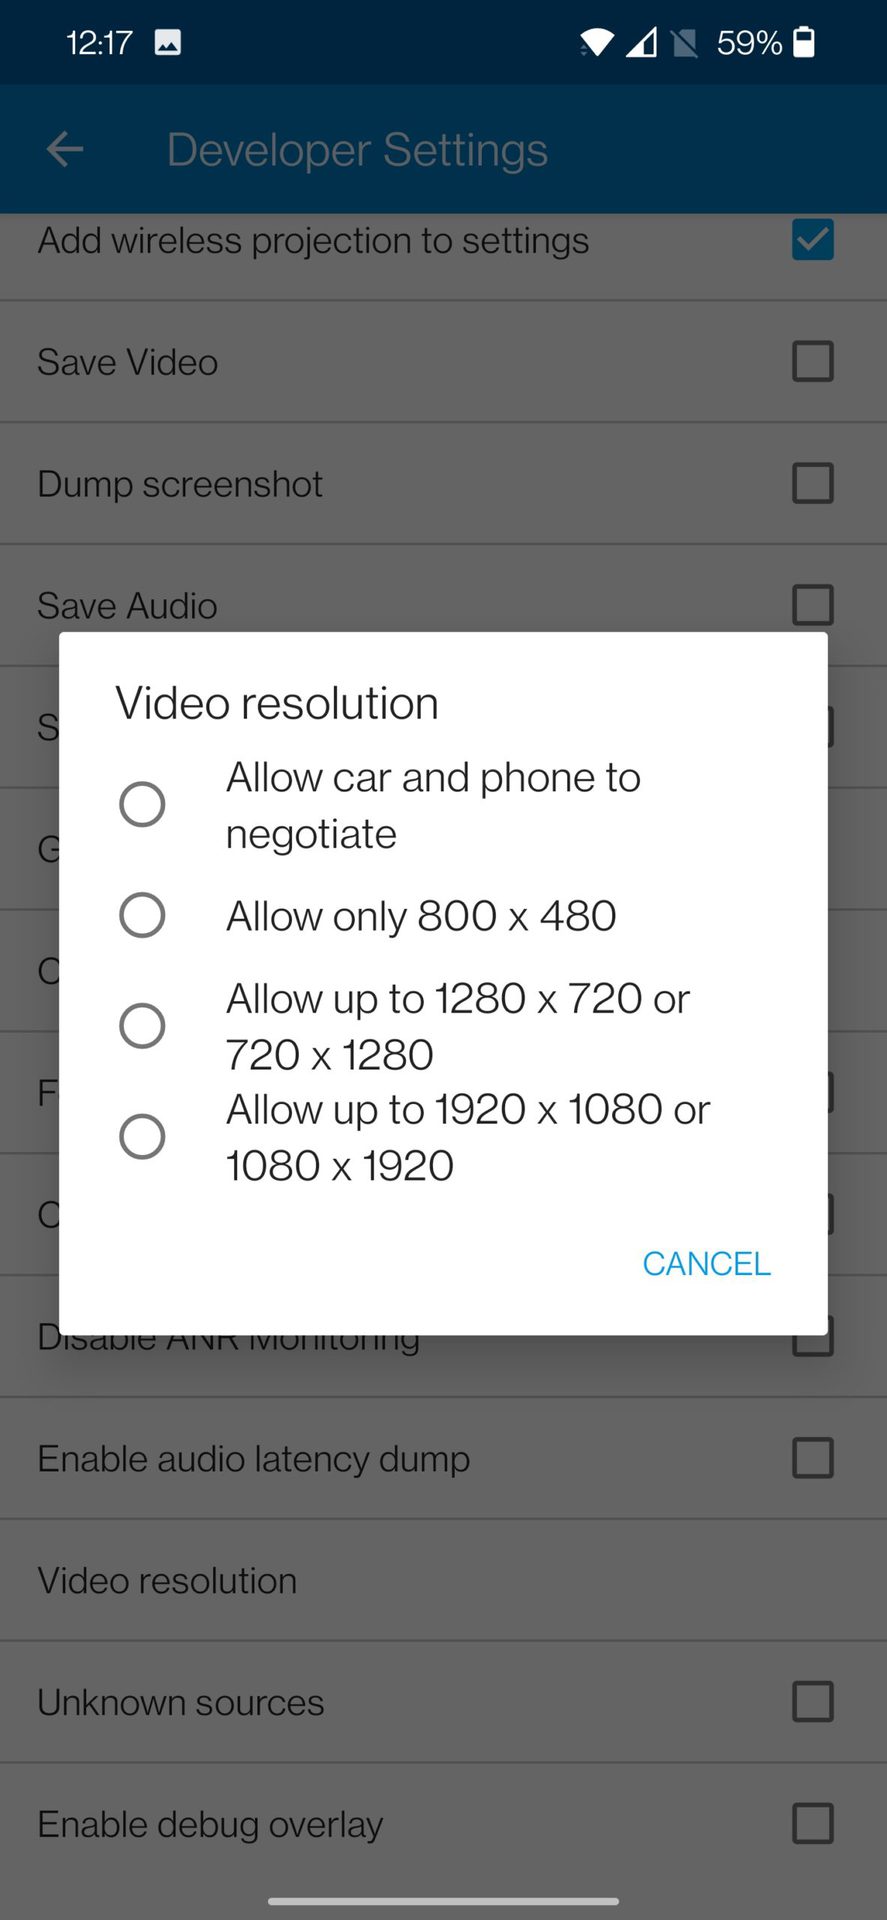 developer settings video resolution